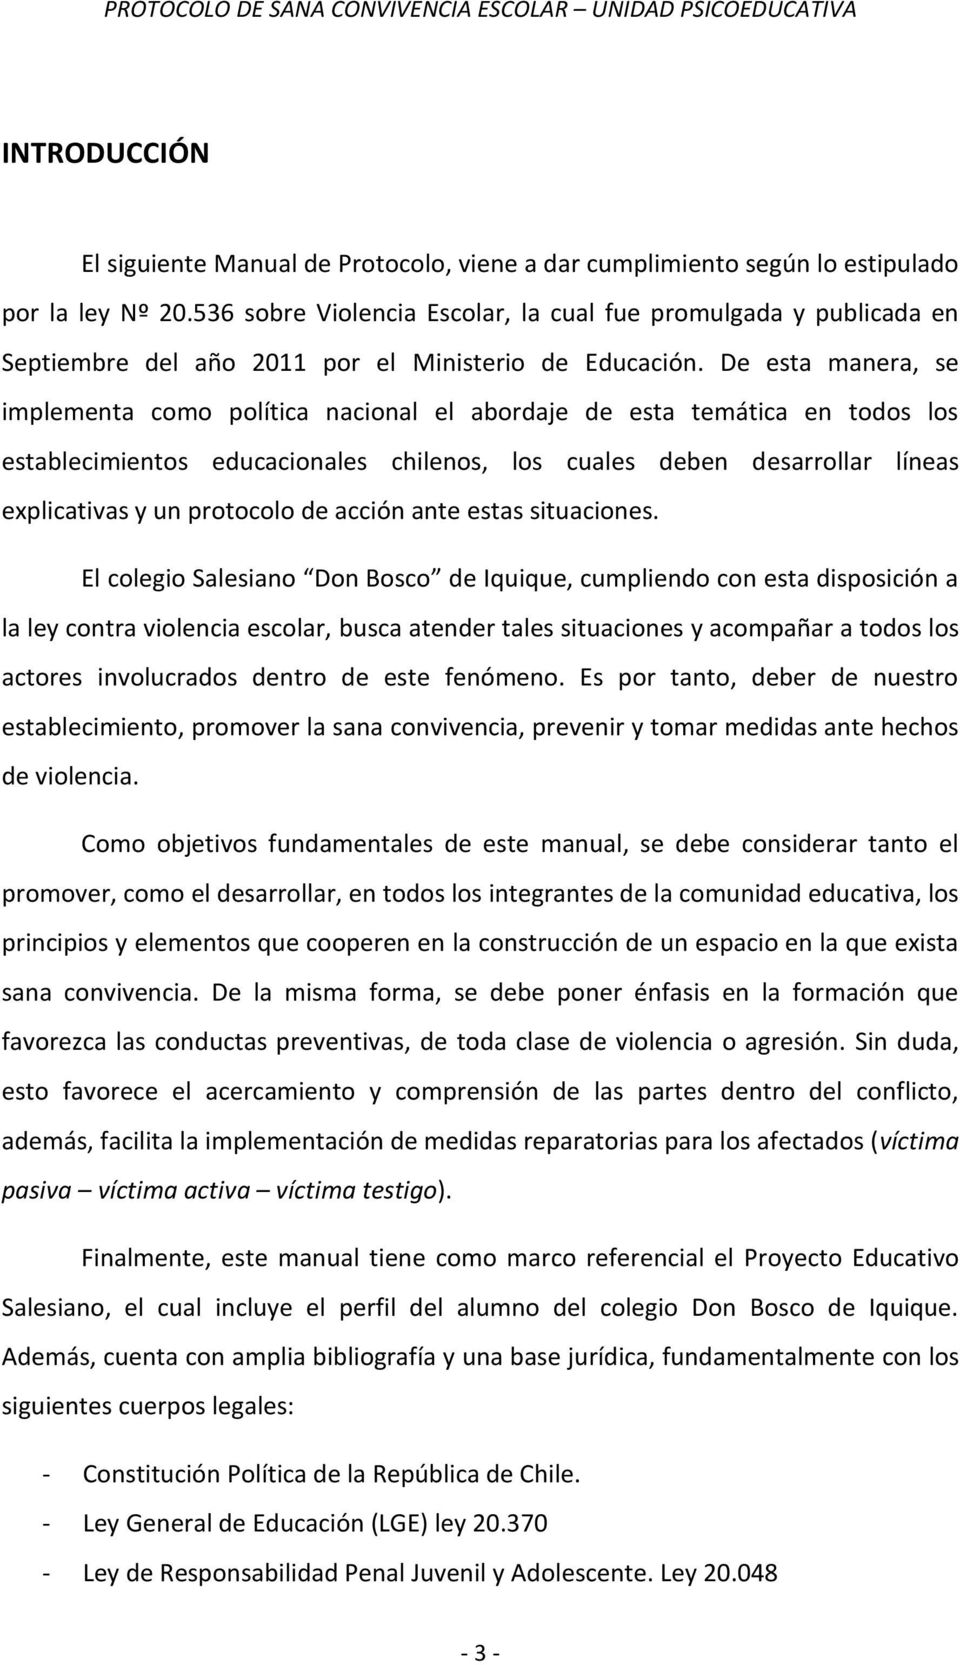 De esta manera, se implementa como política nacional el abordaje de esta temática en todos los establecimientos educacionales chilenos, los cuales deben desarrollar líneas explicativas y un protocolo